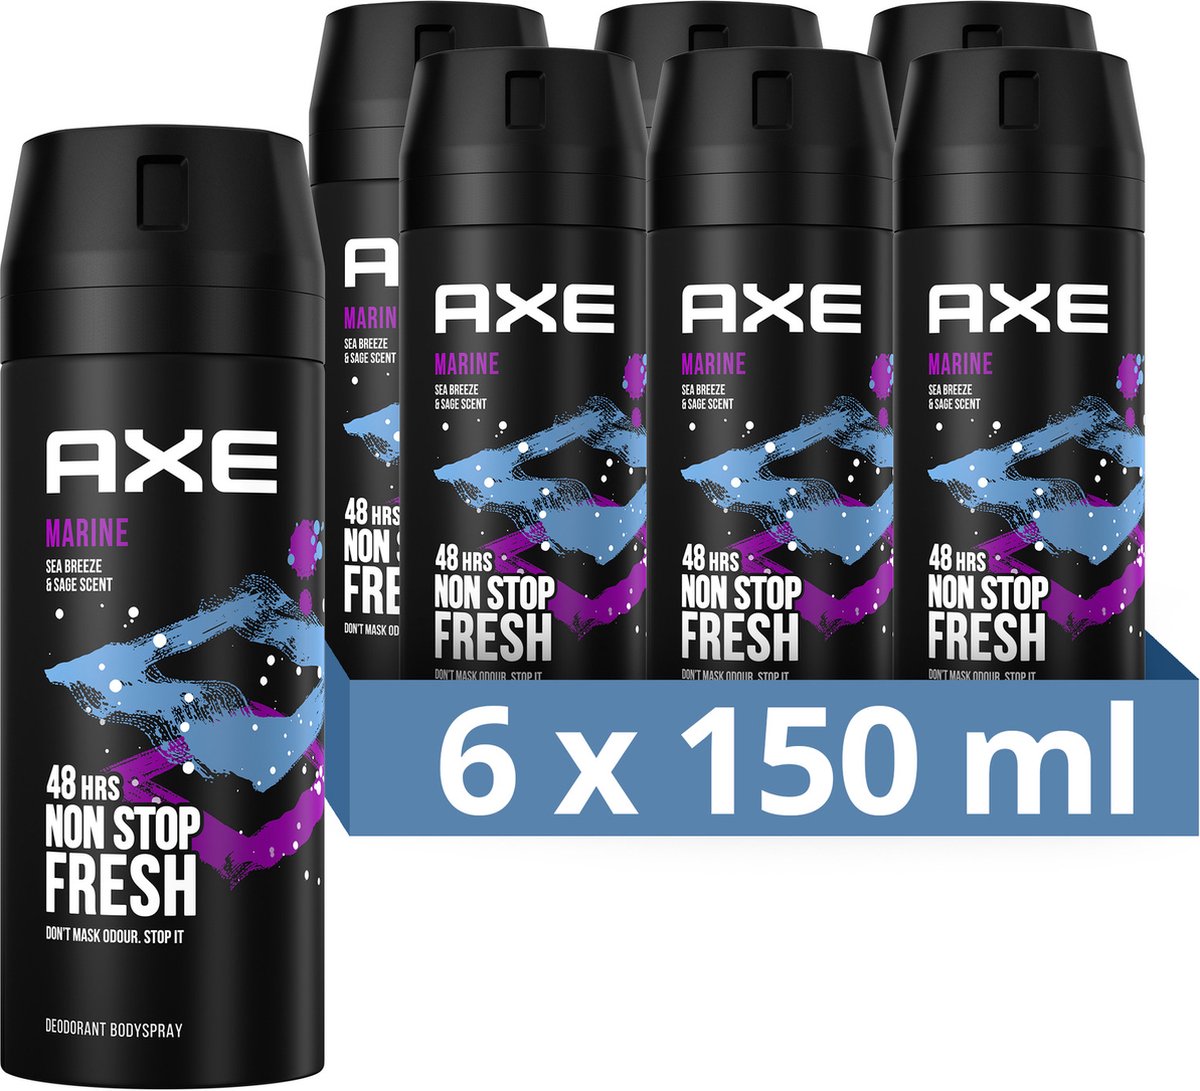 AXE Marine Déodorant Body Spray - 6 x 150 ml - Pack économique | bol.com